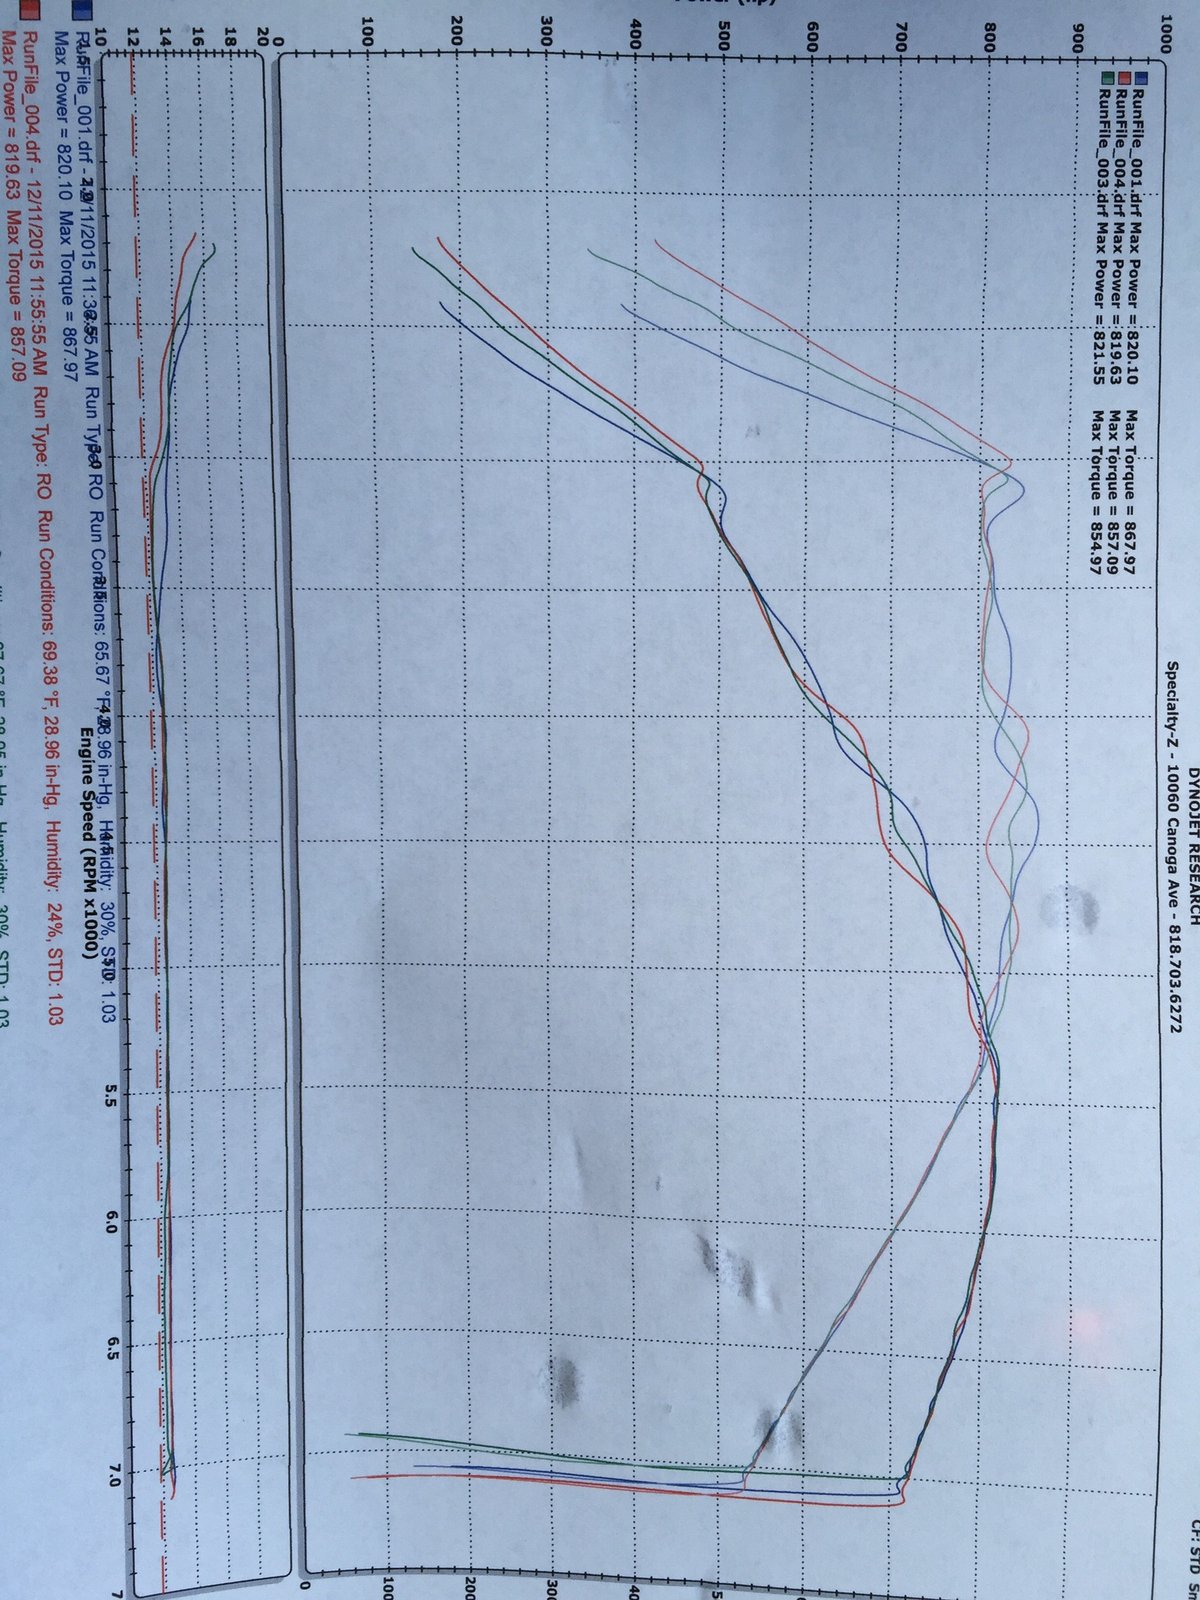 2014  BMW M5  Dyno Graph